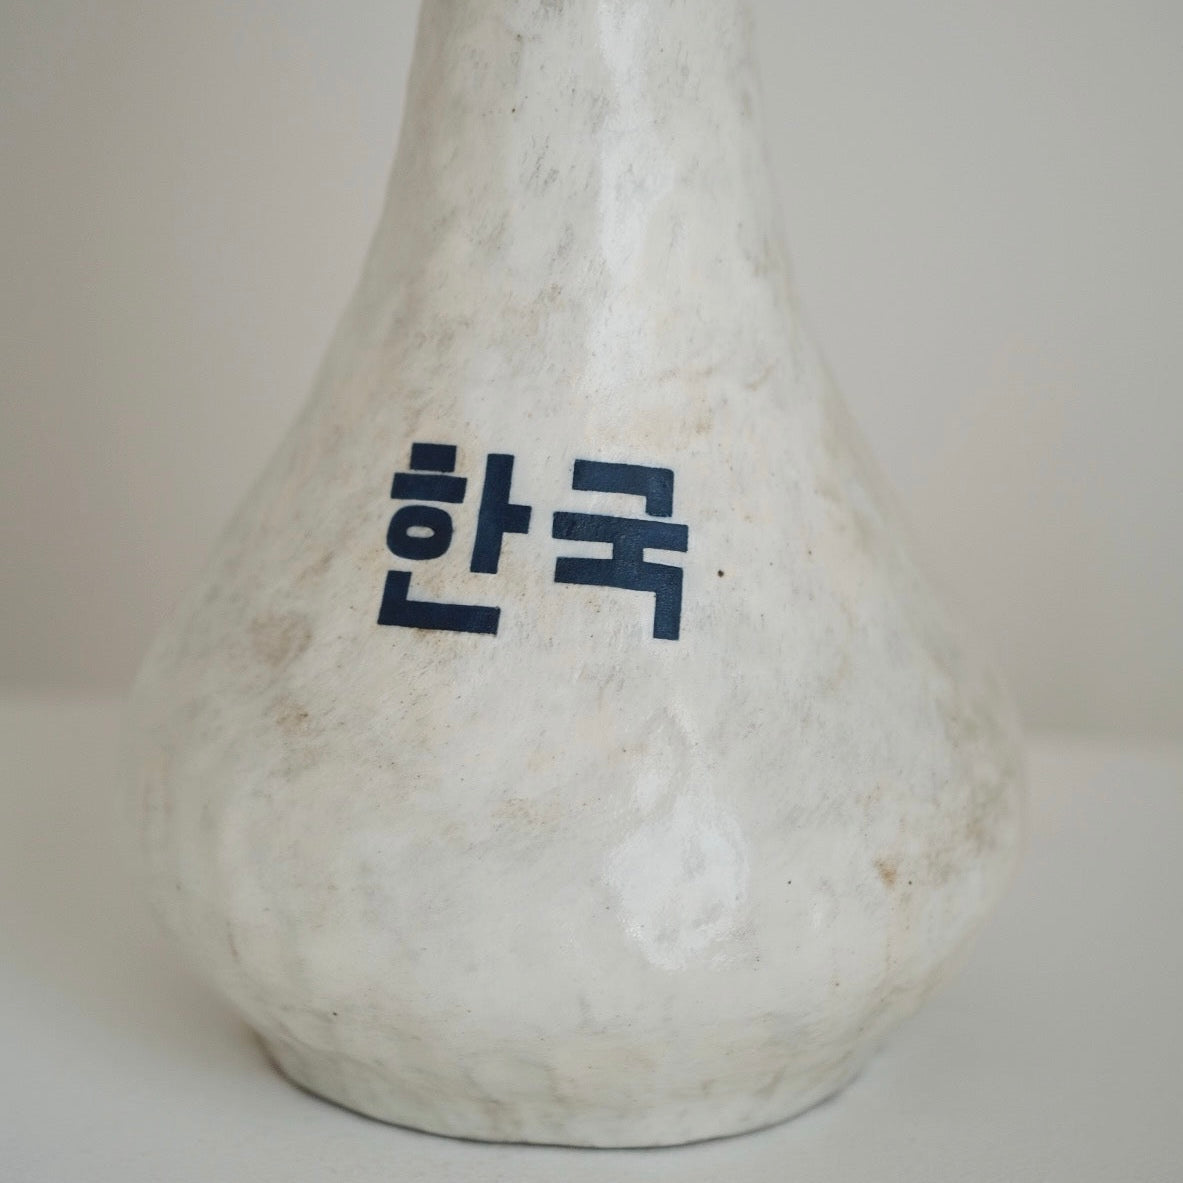 Buncheong Korea Vase / Jubyeong